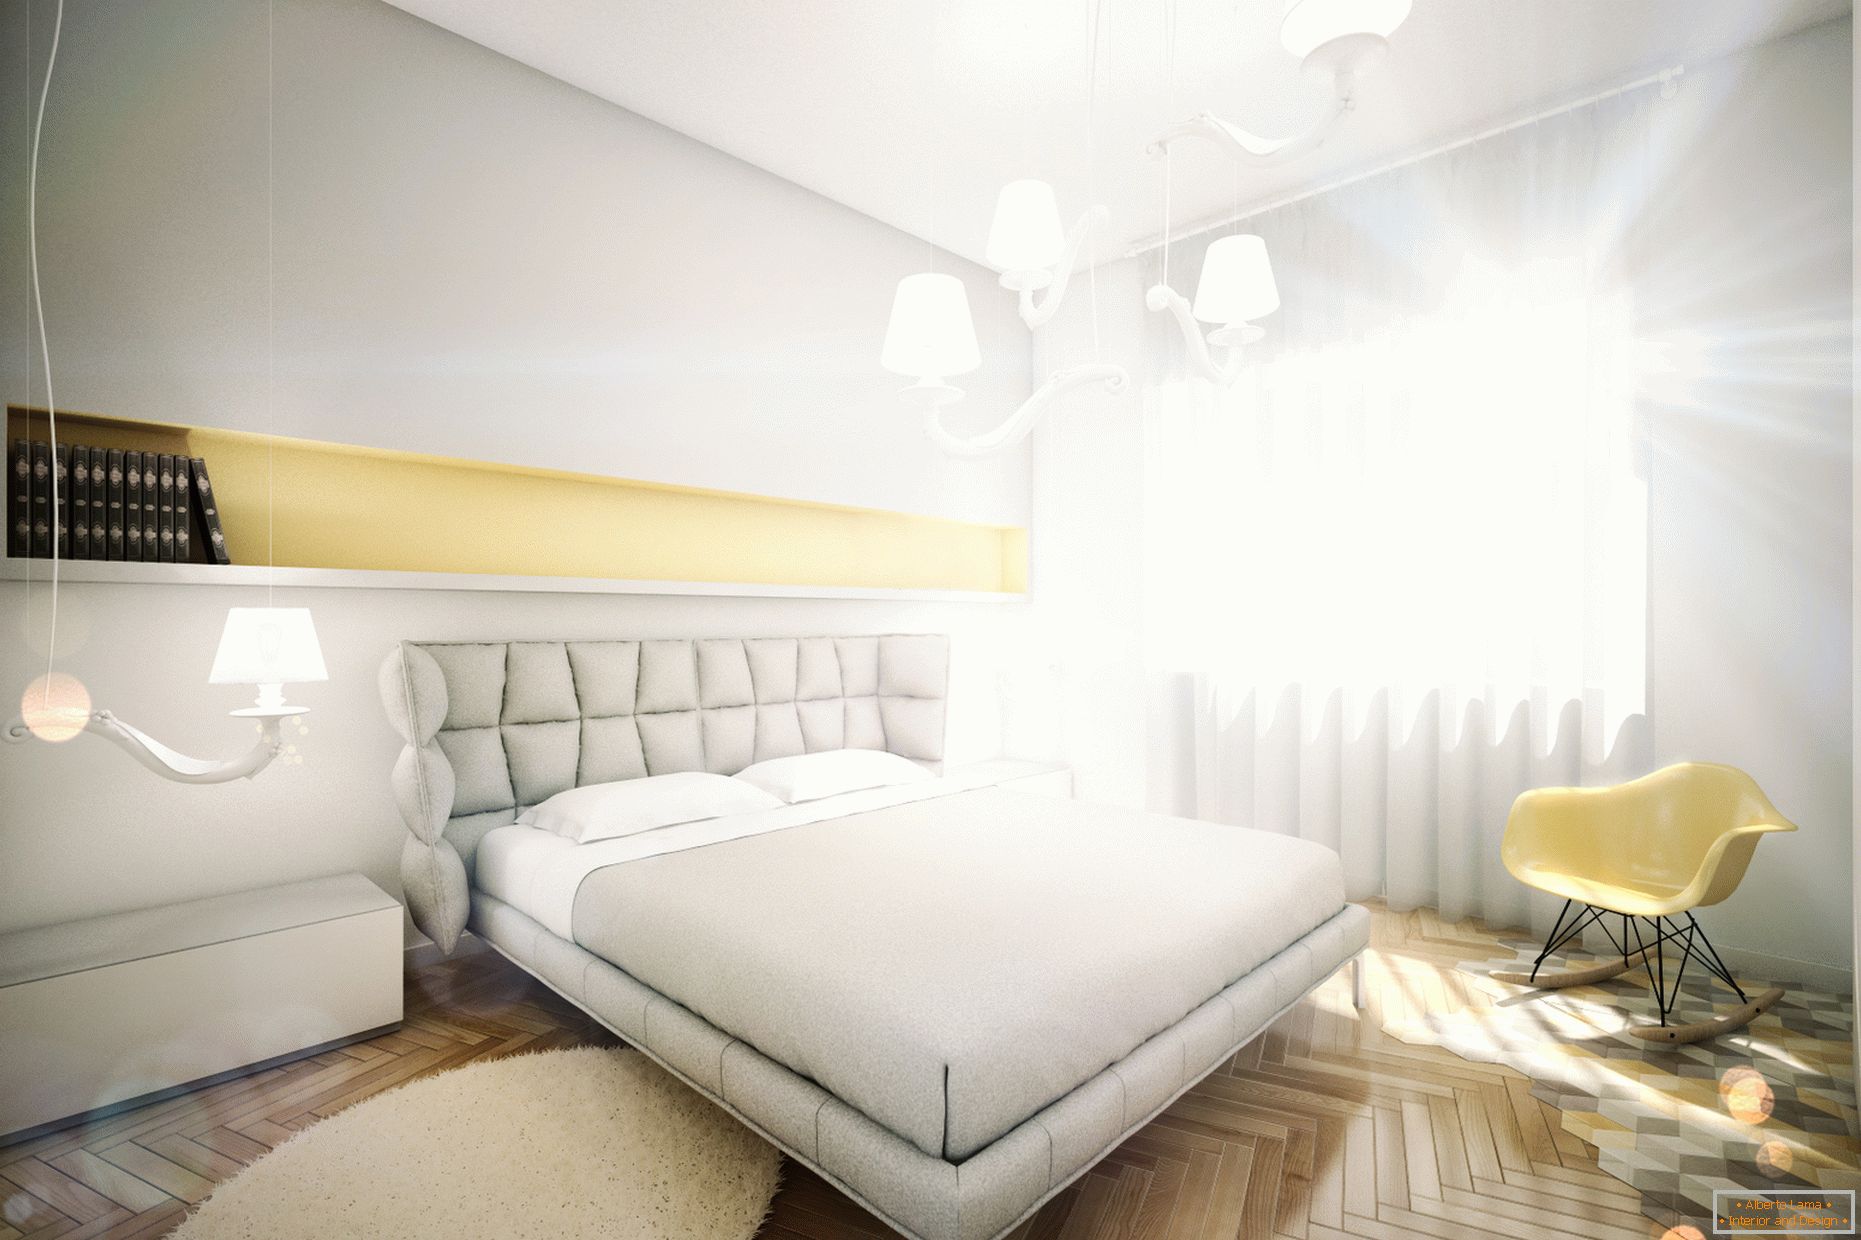 Apartamento de diseño en colores pastel: dormitorio